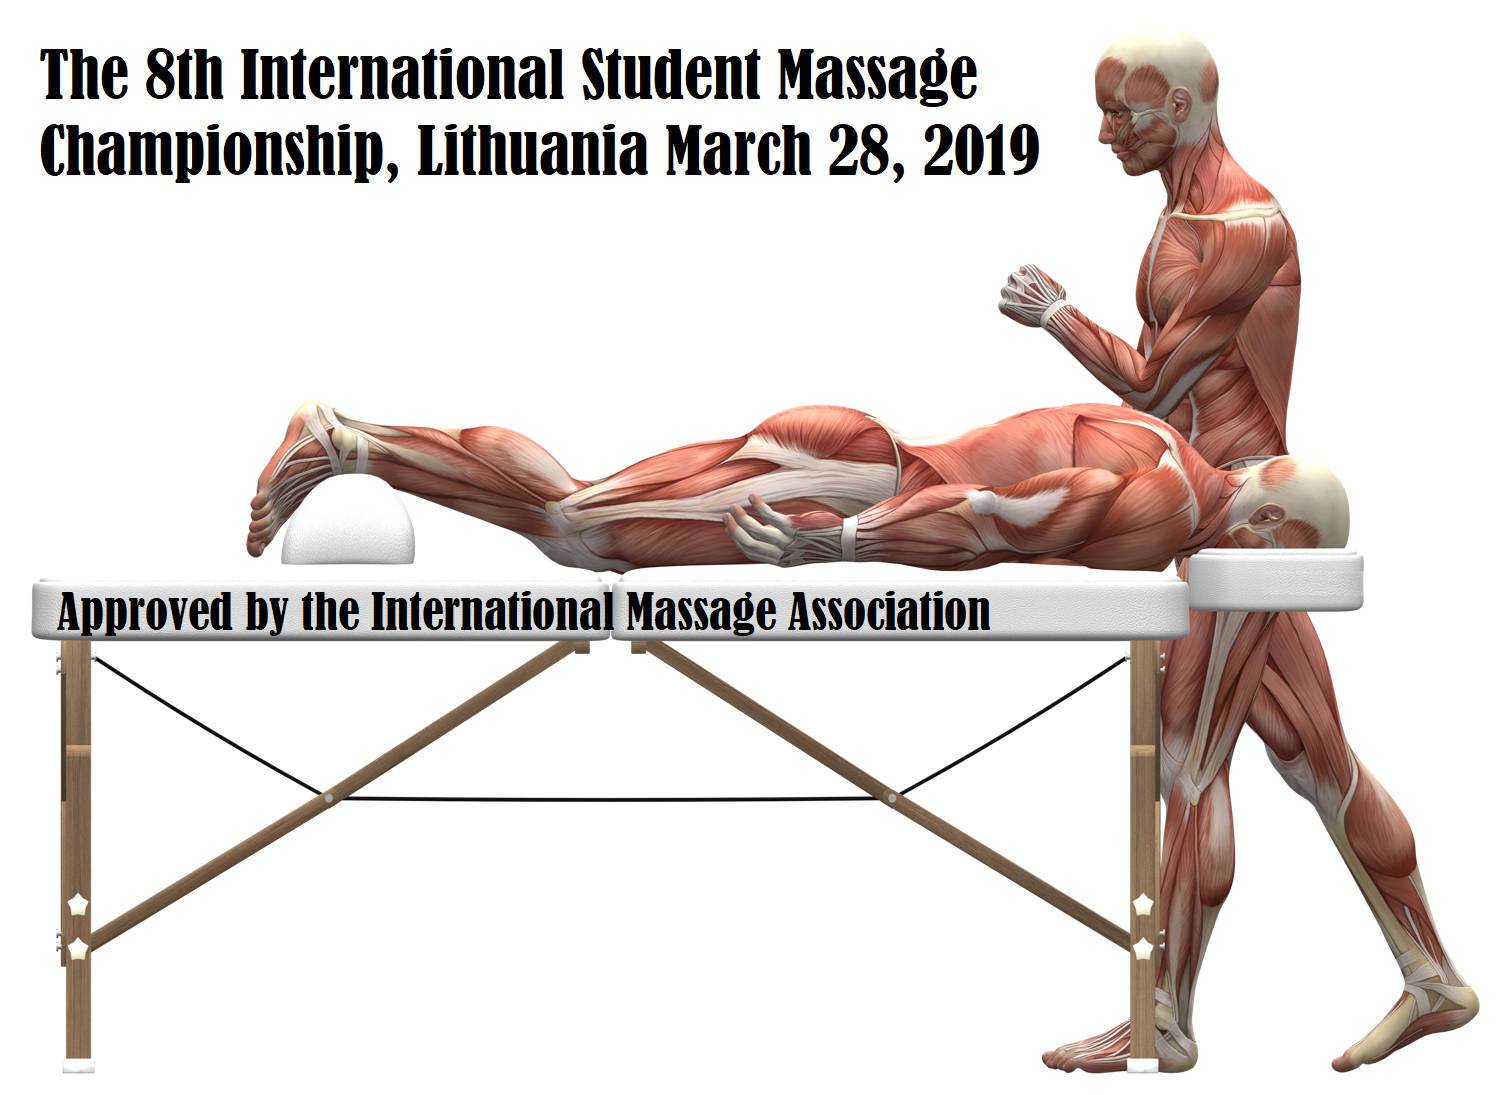 International Student Massage Championship World Championship Massage